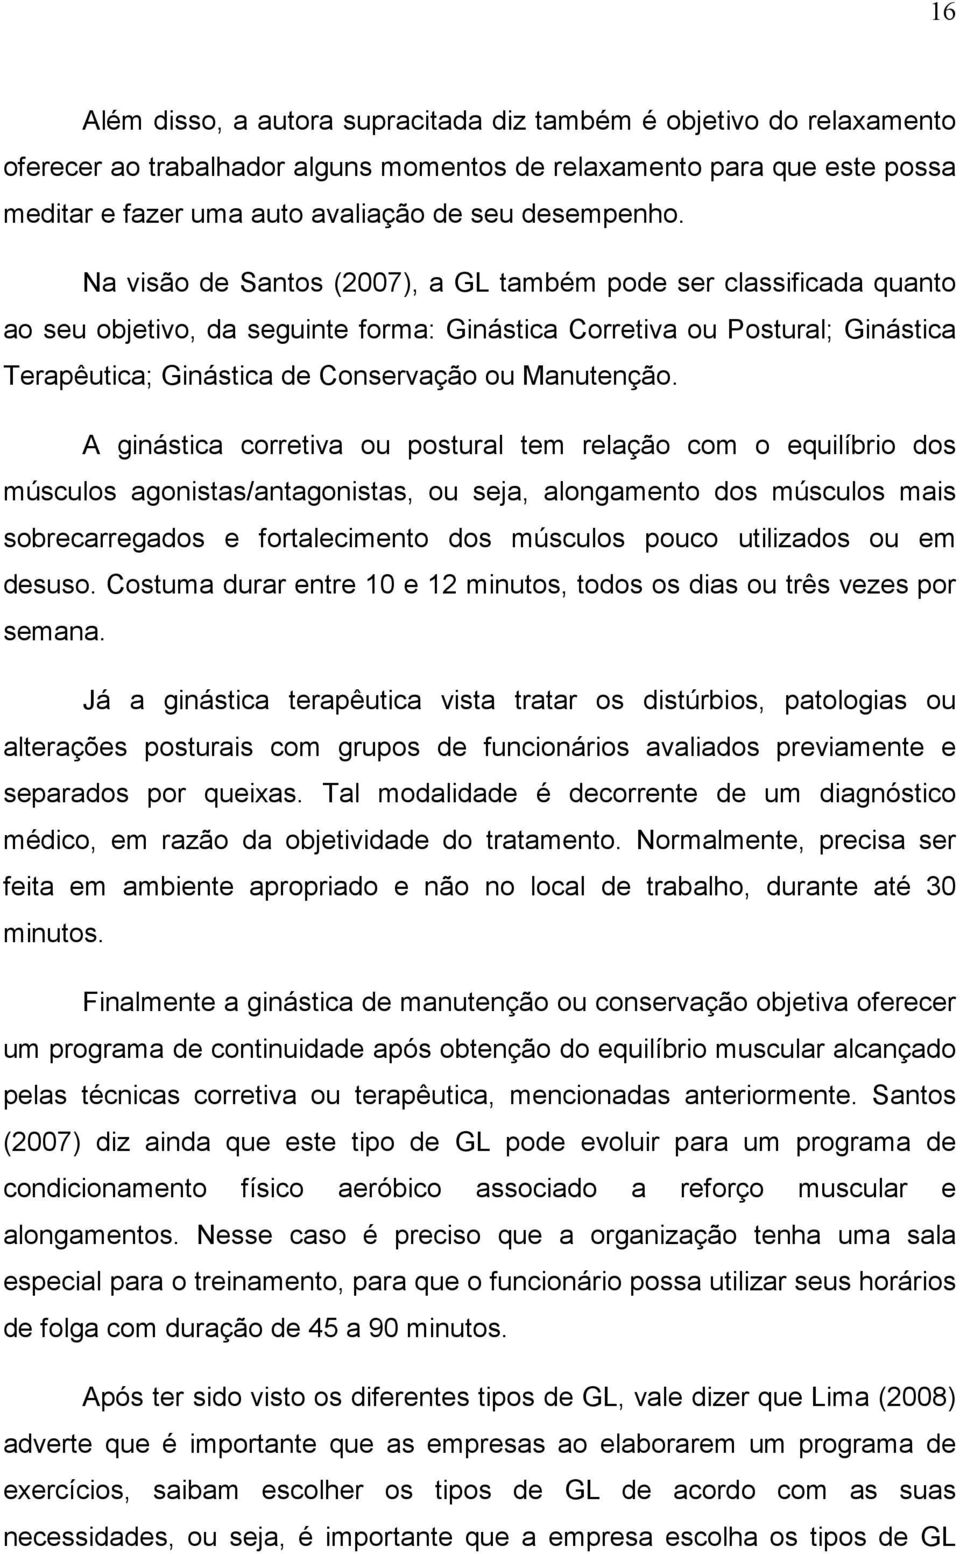 Na visão de Santos (2007), a GL também pode ser classificada quanto ao seu objetivo, da seguinte forma: Ginástica Corretiva ou Postural; Ginástica Terapêutica; Ginástica de Conservação ou Manutenção.